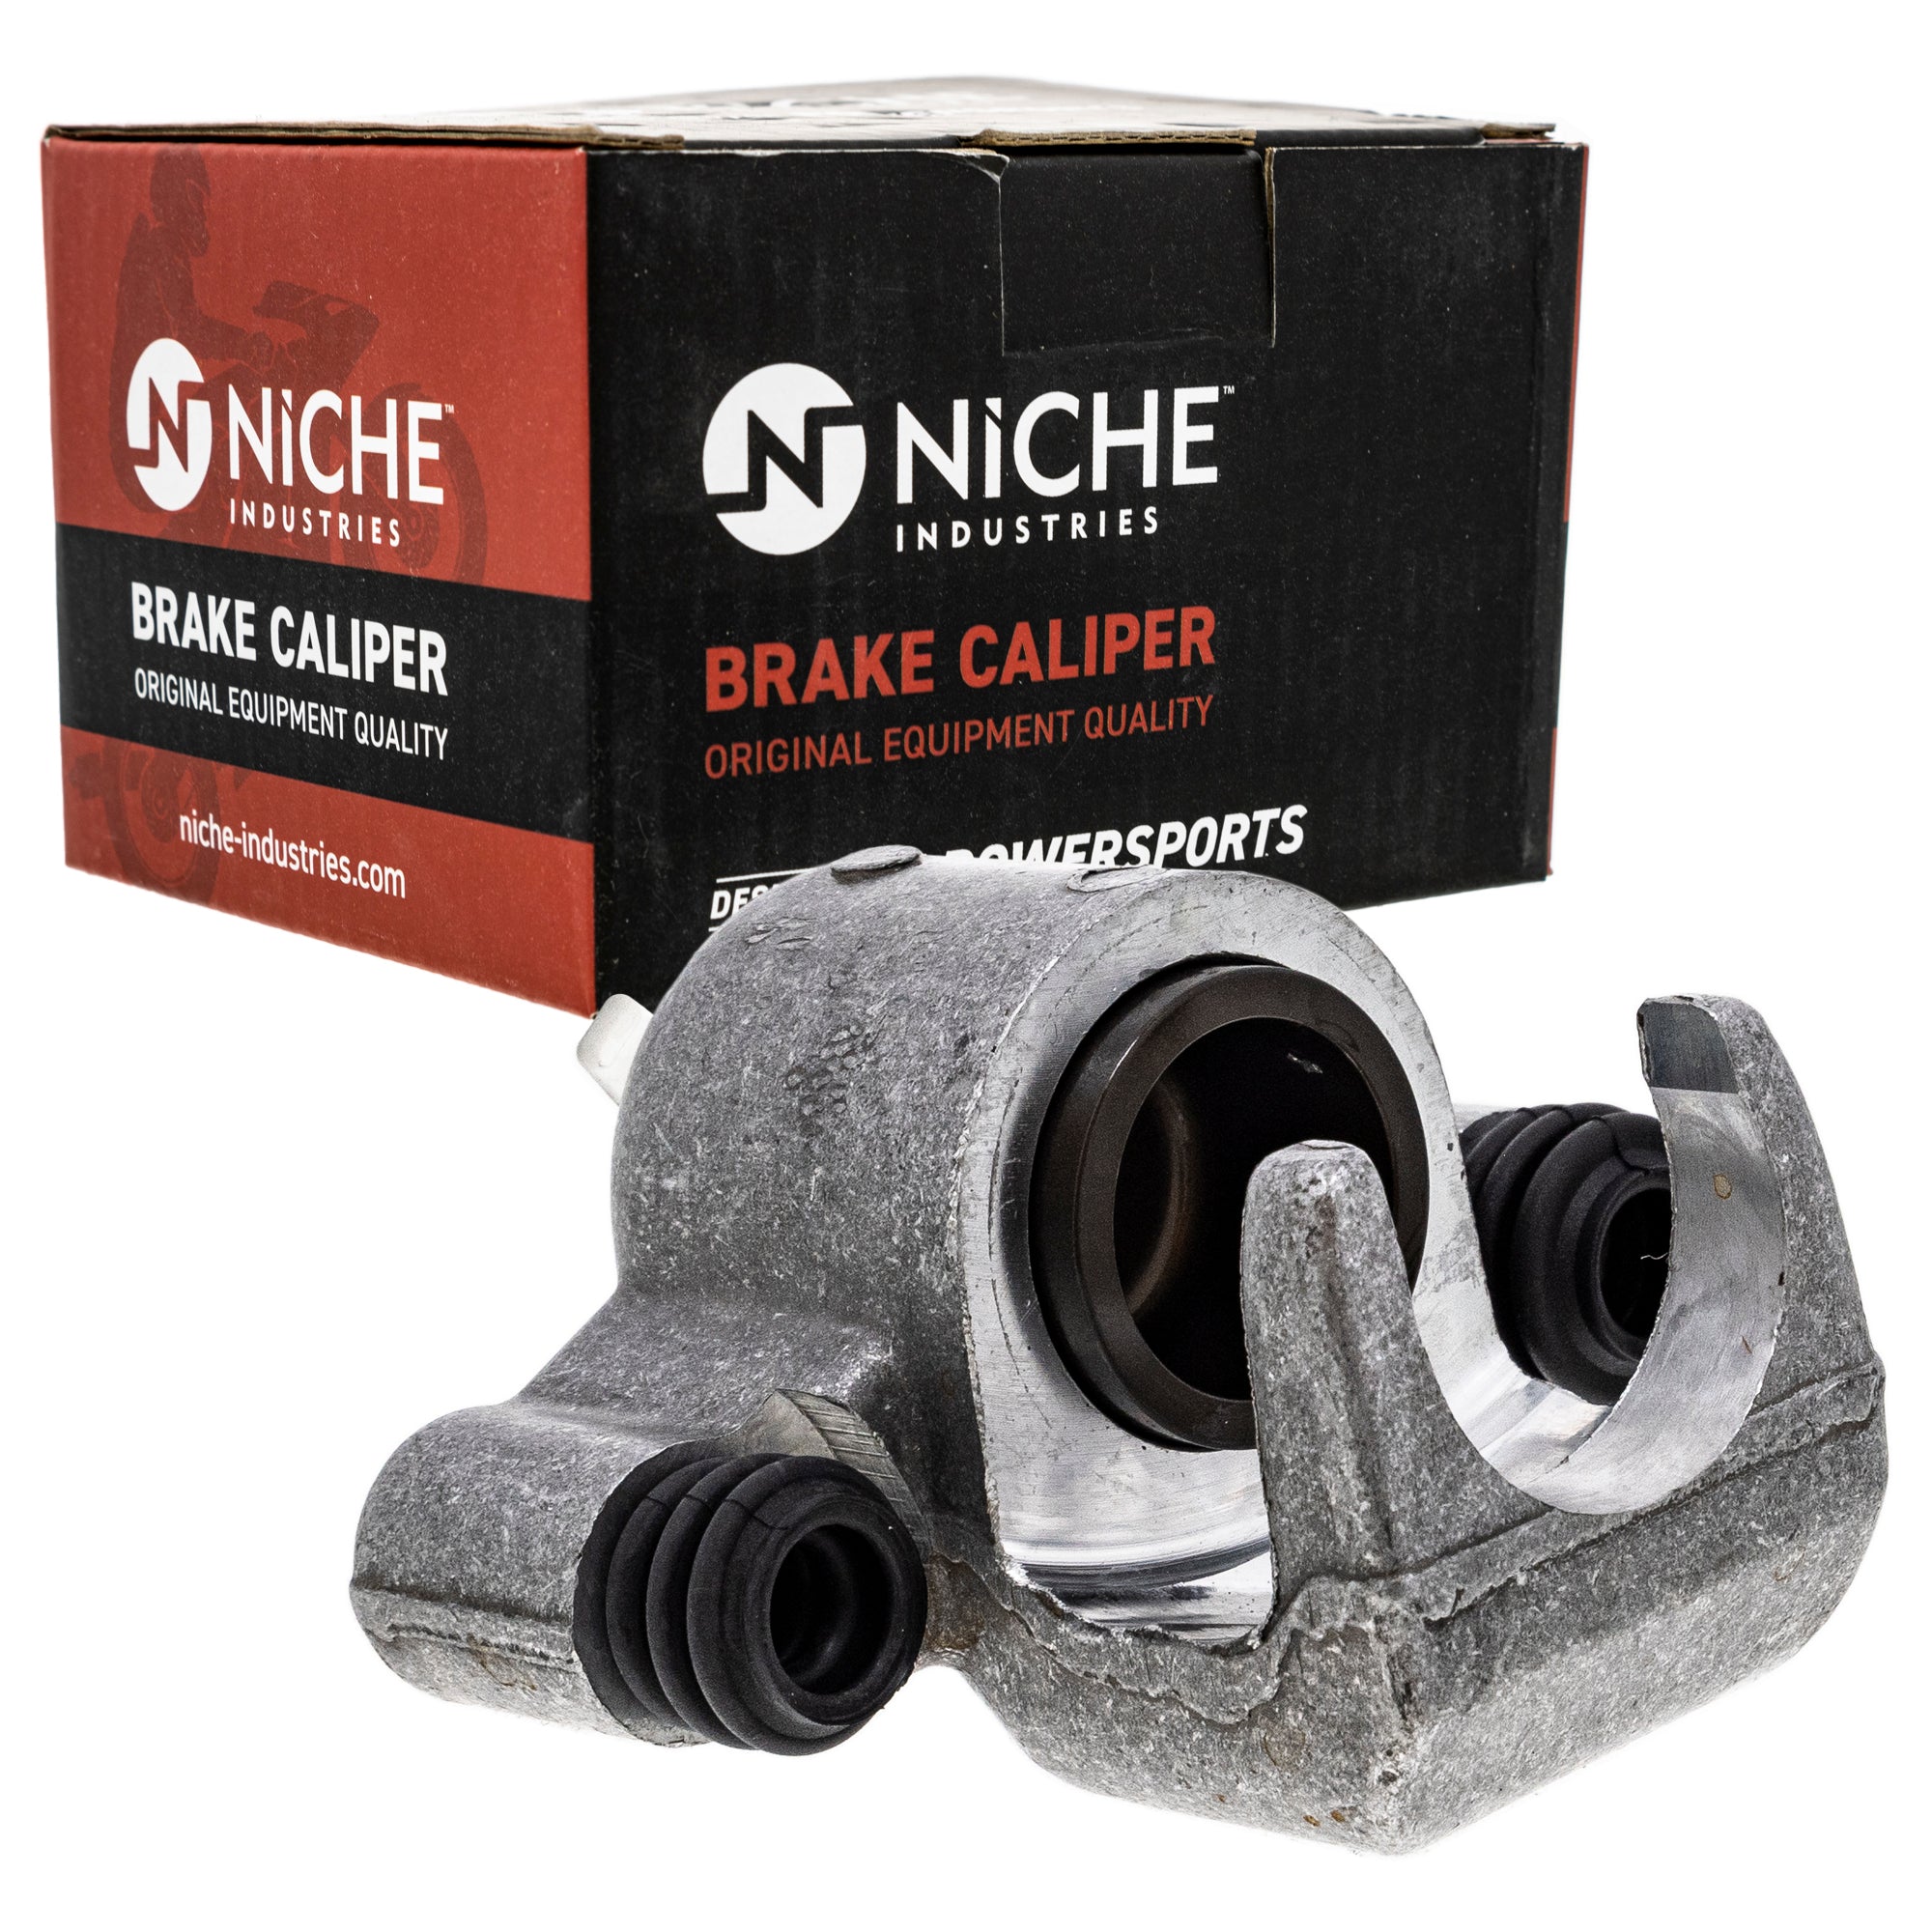 NICHE MK1001042 Brake Caliper Kit